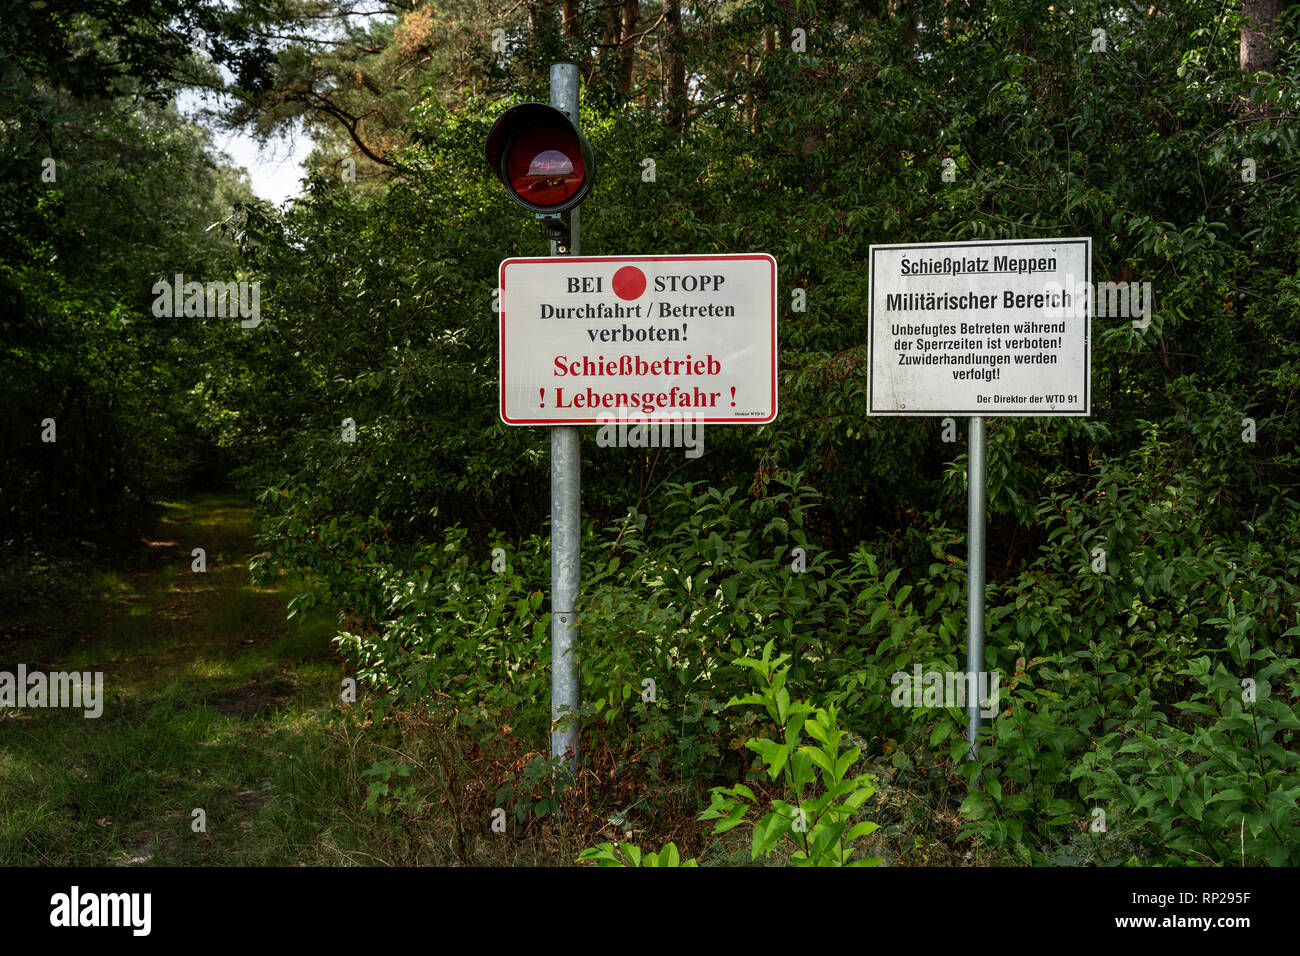 Warning signs at the Bundeswehr firing range and military training area of the Wehrtechnische Dienststelle fŸr Waffen und Munition 91 (WTD 91) in Meppen. Stock Photo